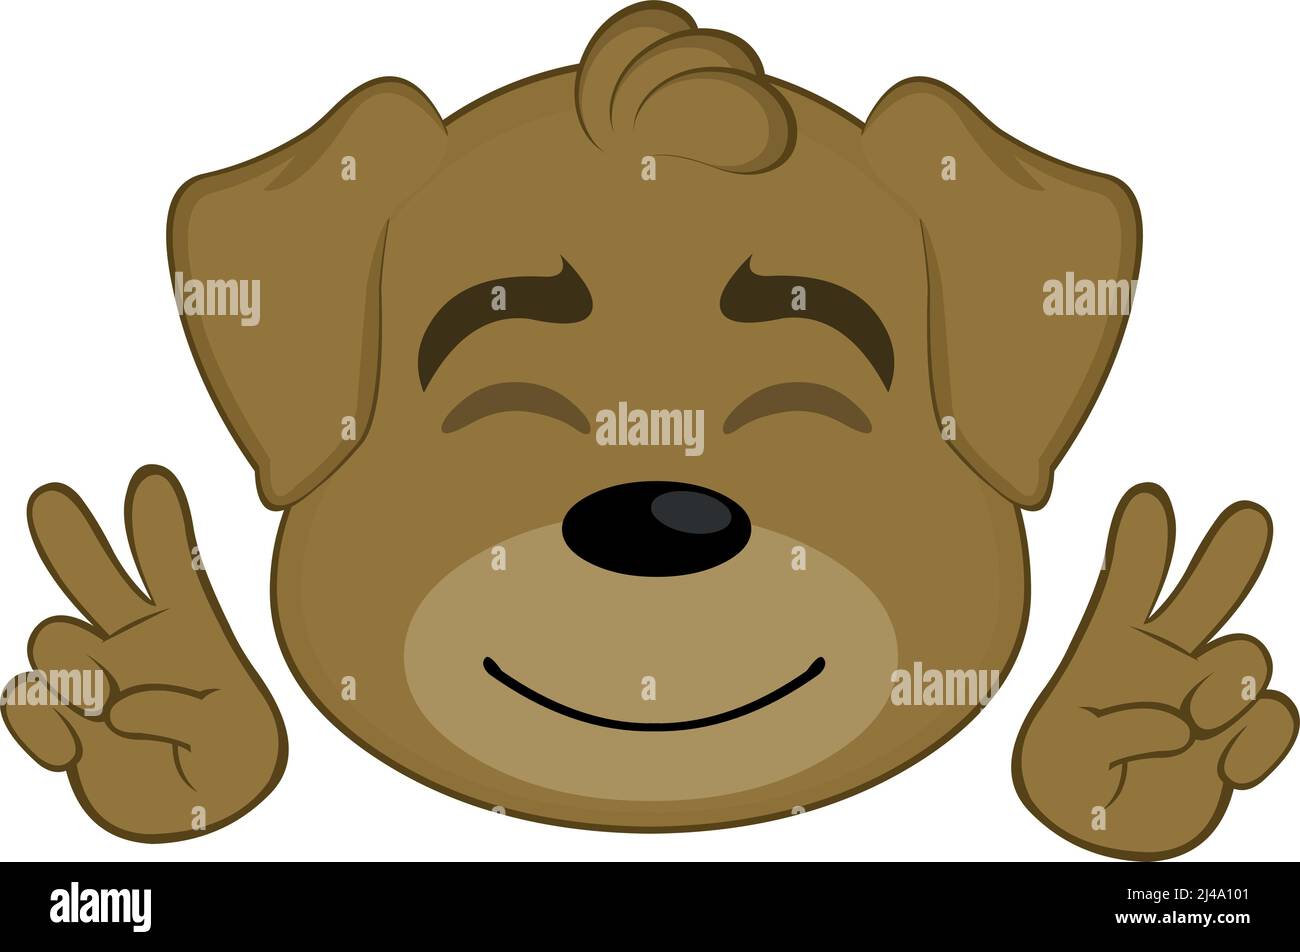 Illustrazione vettoriale dell'emoticon del volto di un cane cartoon che fa il simbolo della pace e dell'amore con le sue mani Illustrazione Vettoriale